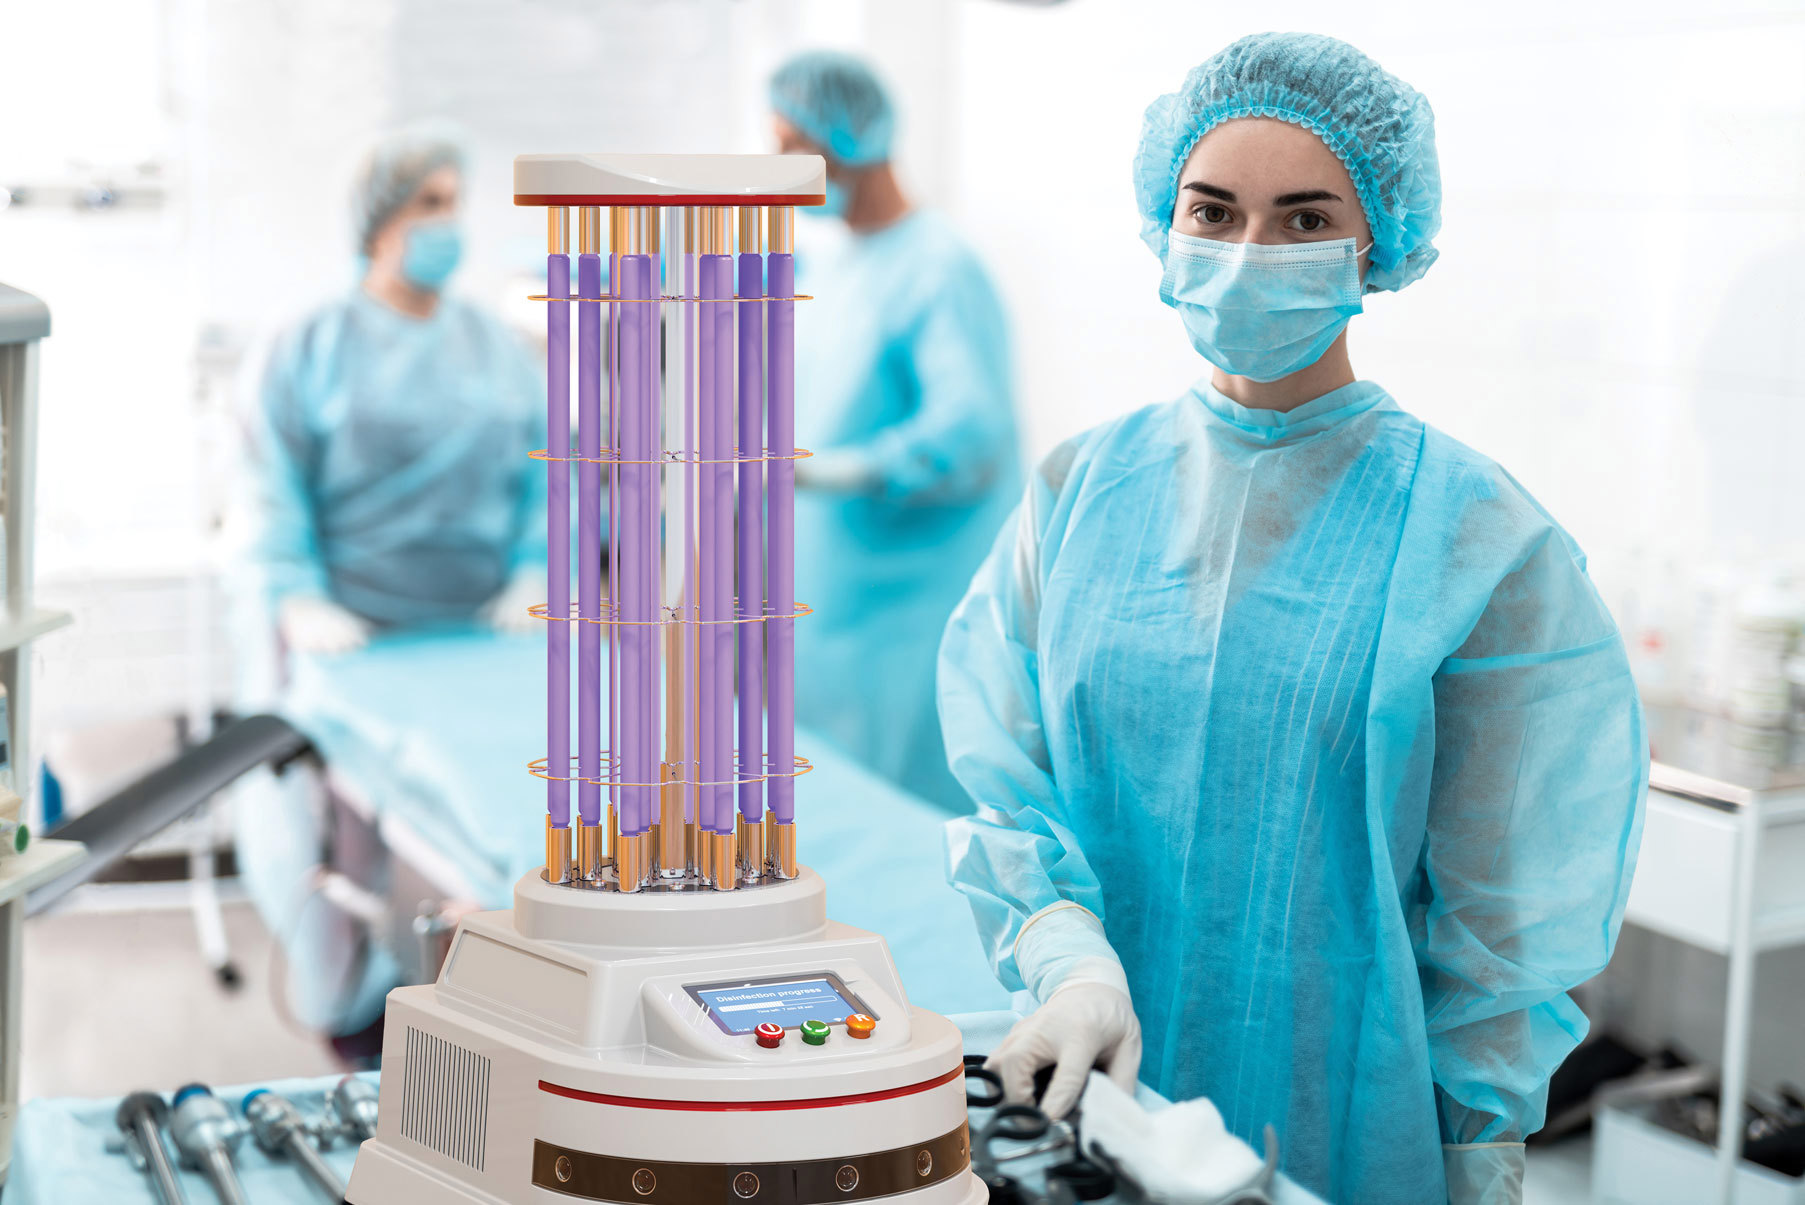 Les lasers UV sont très utiles dans un large éventail d'applications, notamment les systèmes biomédicales basés sur la microscopie à fluorescence et la désinfection des surfaces pour éliminer les agents pathogènes potentiels.